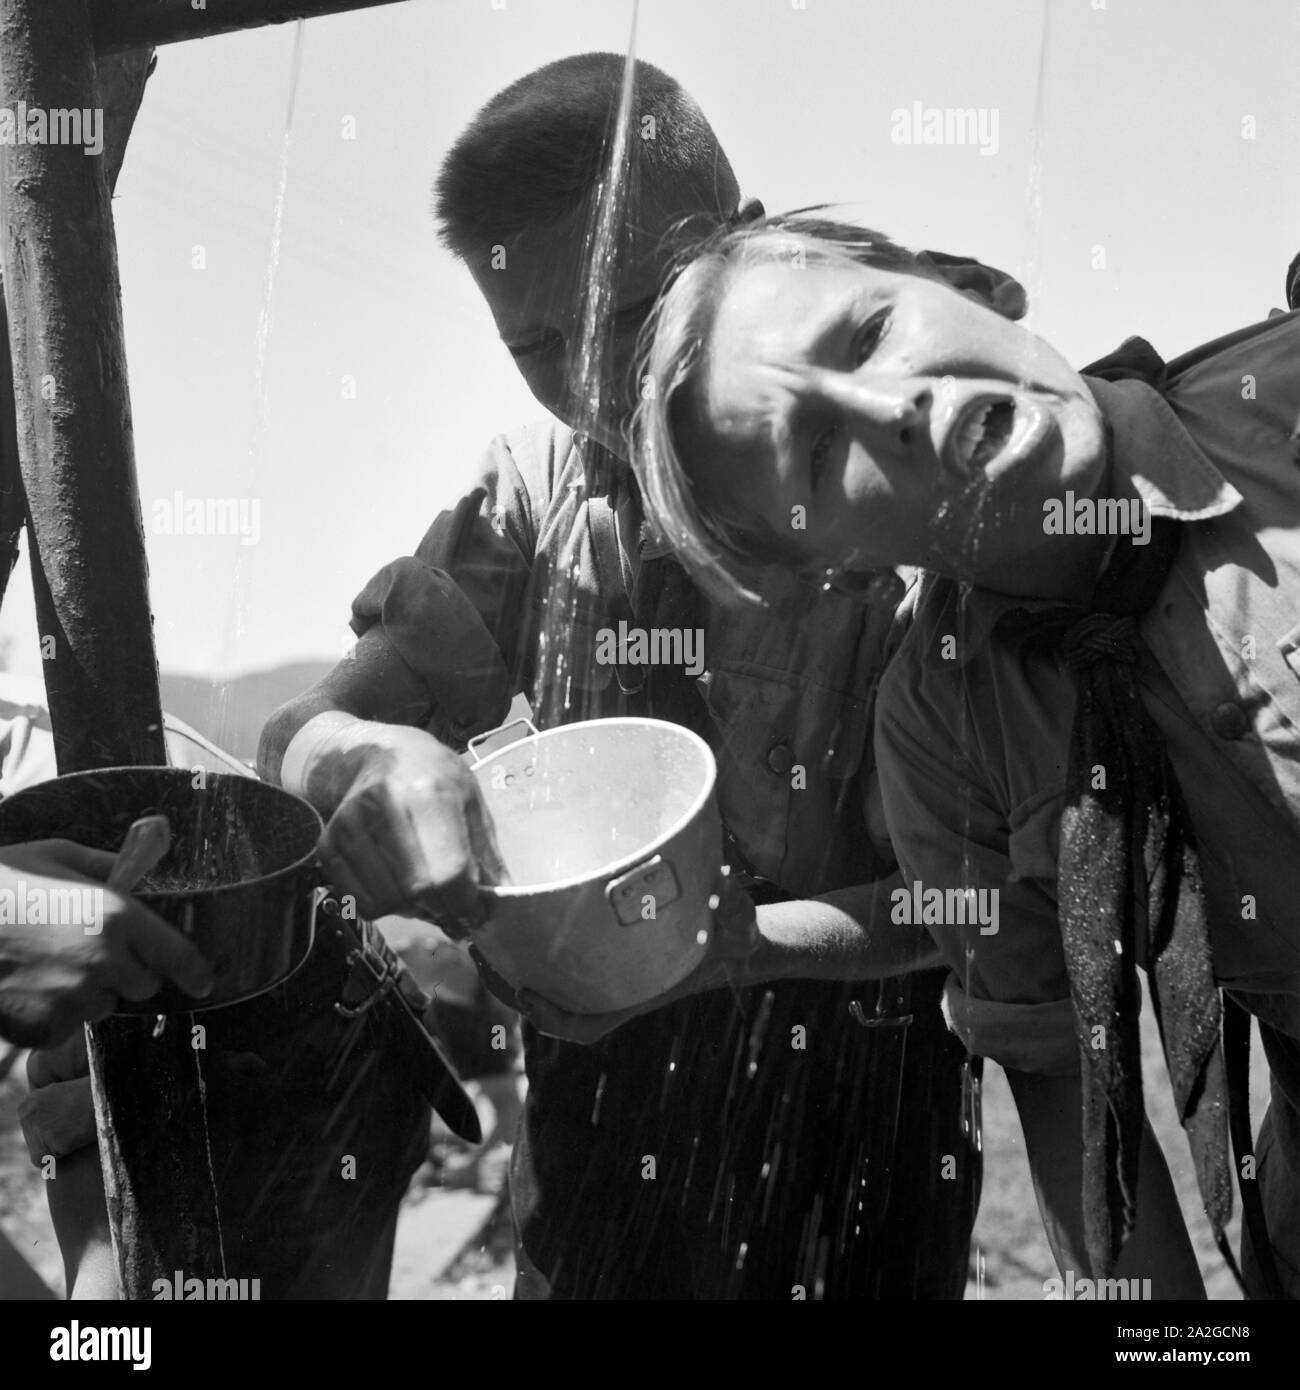 Hitlerjungen löschen ihren Durst un einem Brunnen in der Nähe von Spitz in Niederösterreich, Österreich 1930er Jahre. Hitler giovani di bere da un pozzo di Spitz, Austria Inferiore, Austria 1930s. Foto Stock